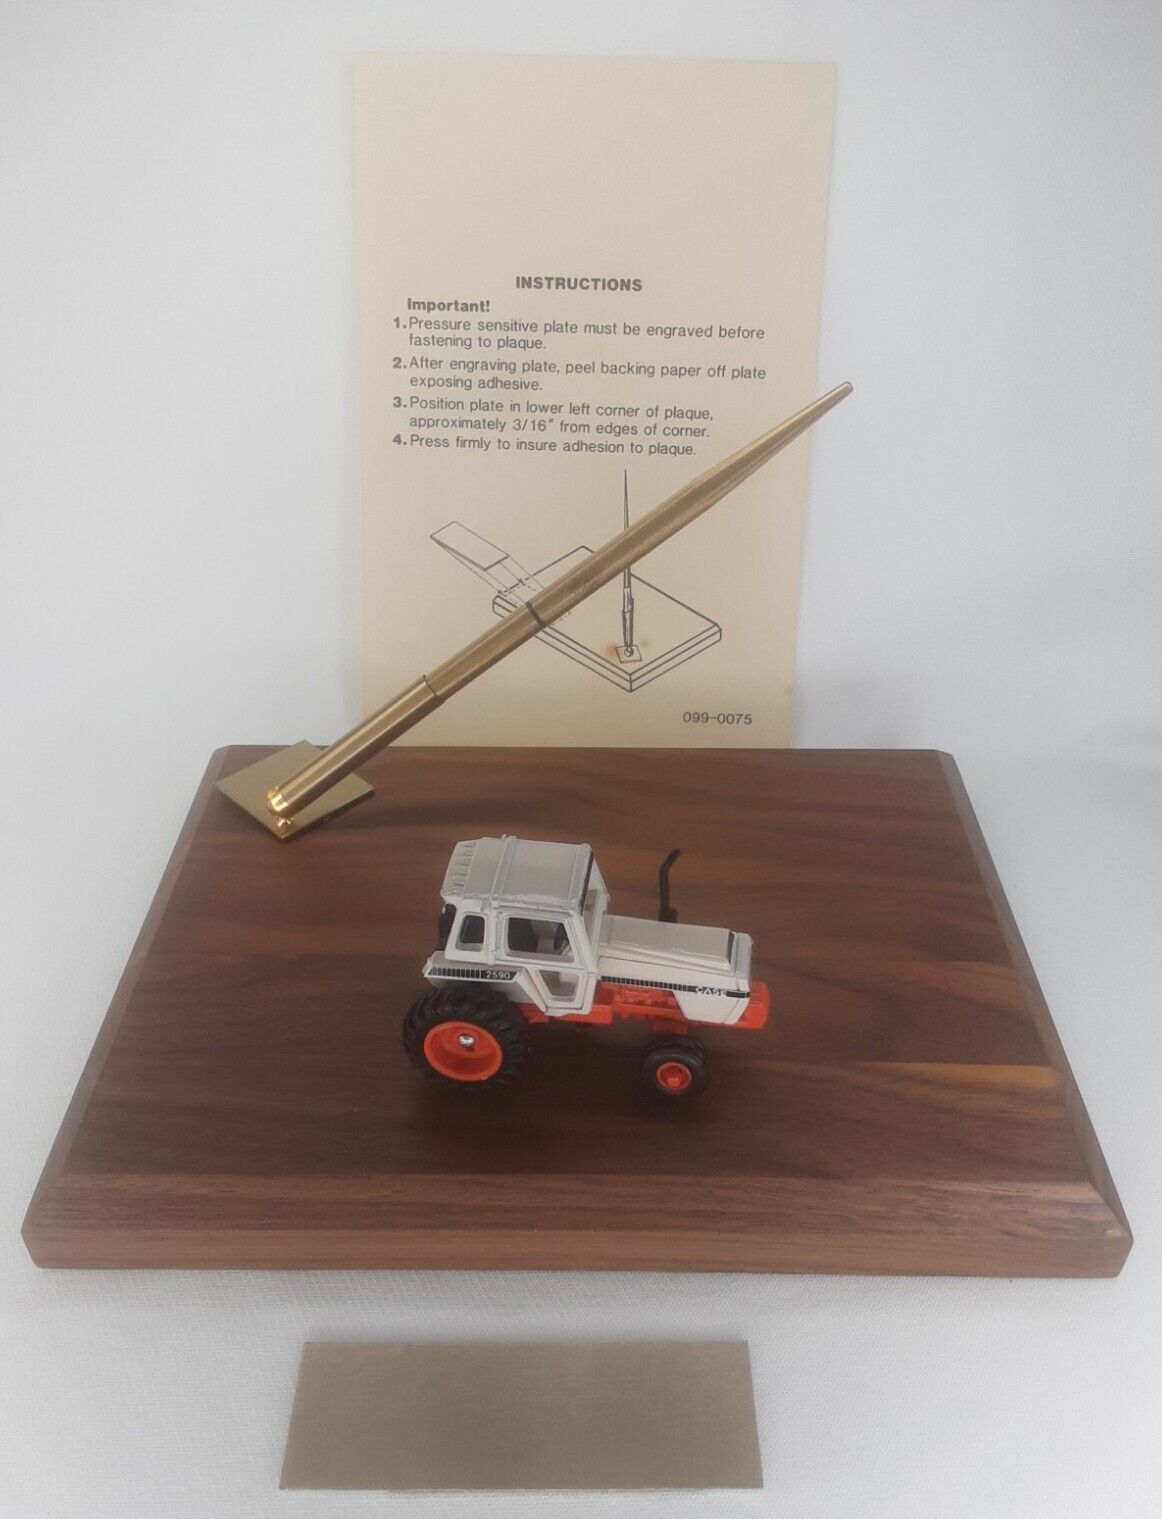 Ertl Desk Pen Set Case 2590 Tractor On Wood Base & Box Agricultural Memorabilia